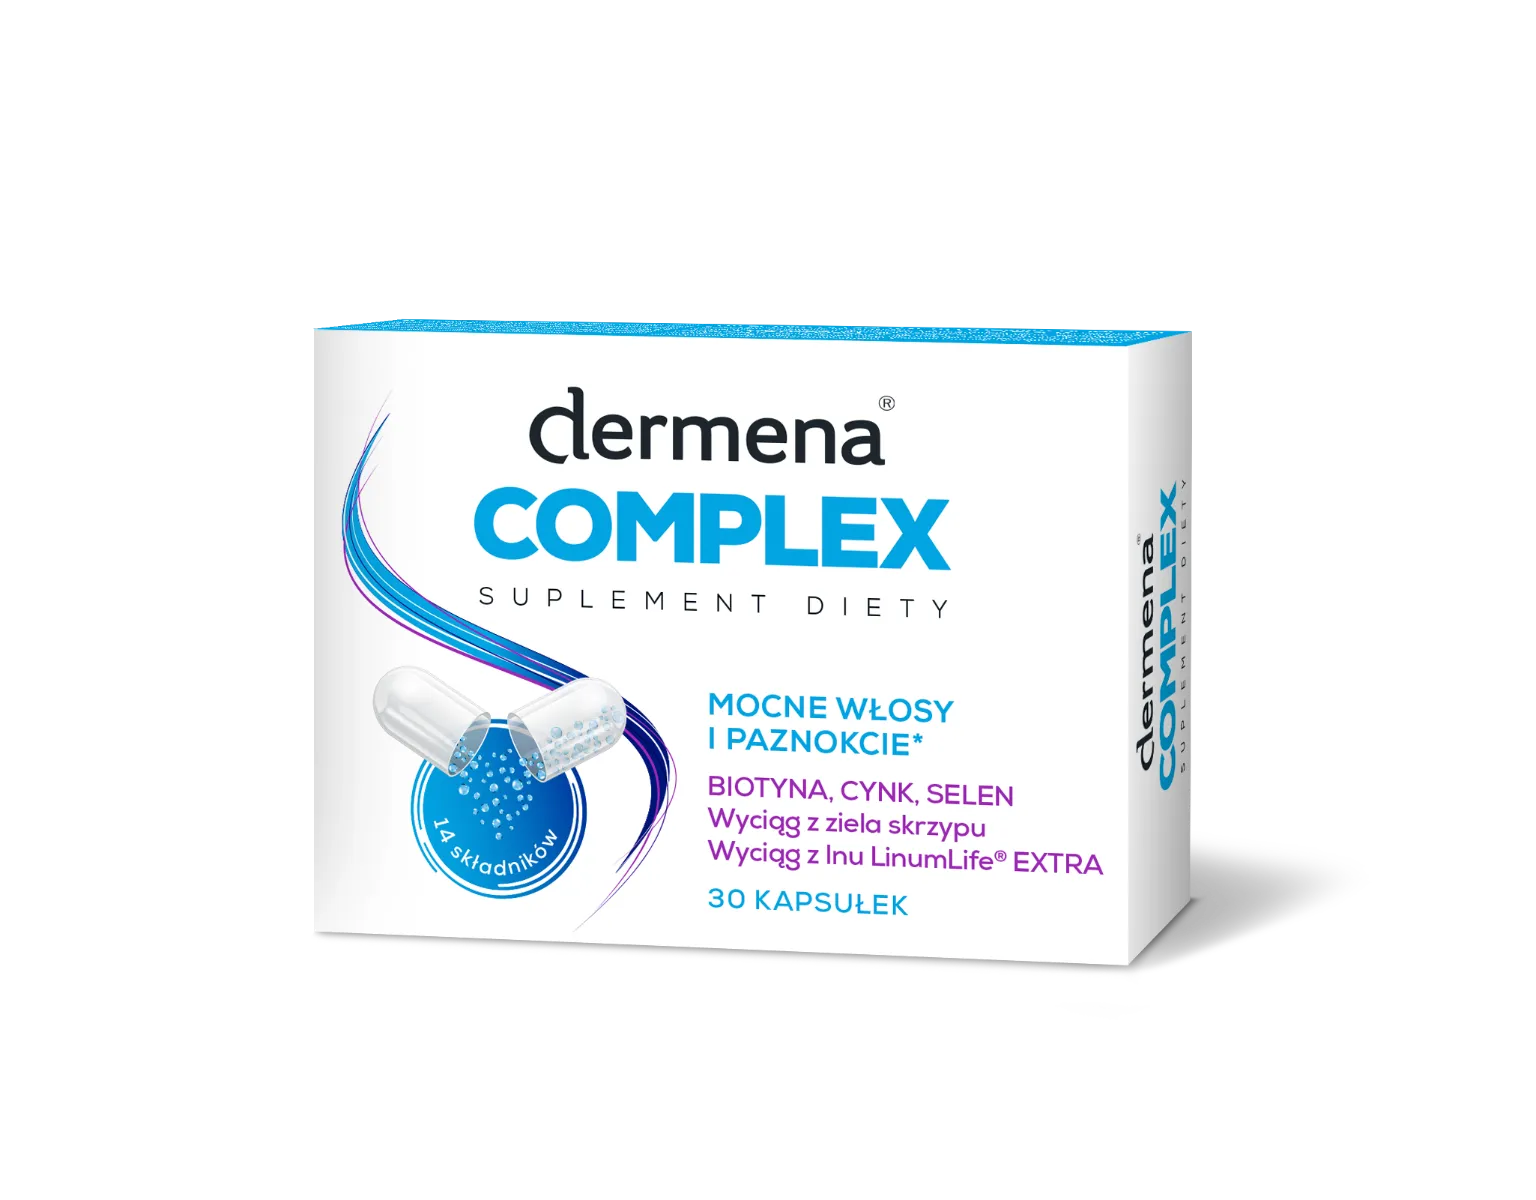 Dermena Complex,  suplement diety, 30 kapsułek